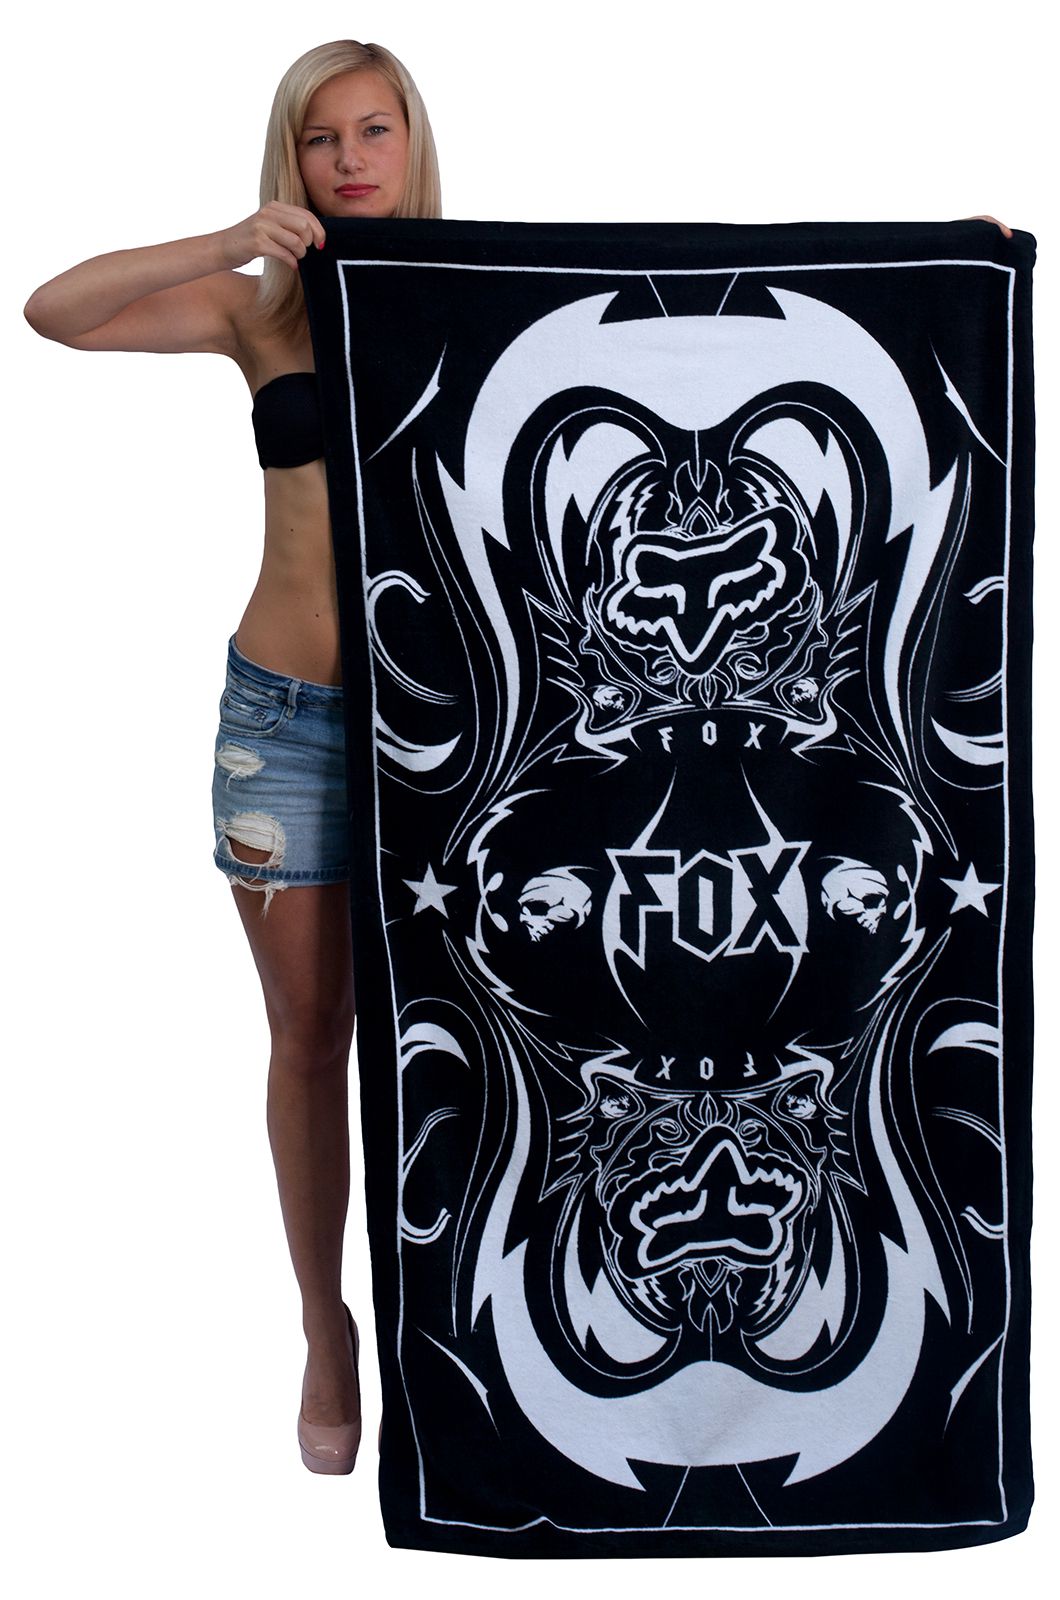 Красивое большое полотенце для тела с мото-лого FOX. Отличный вариант в качестве подстилки на песок или шезлонг №25